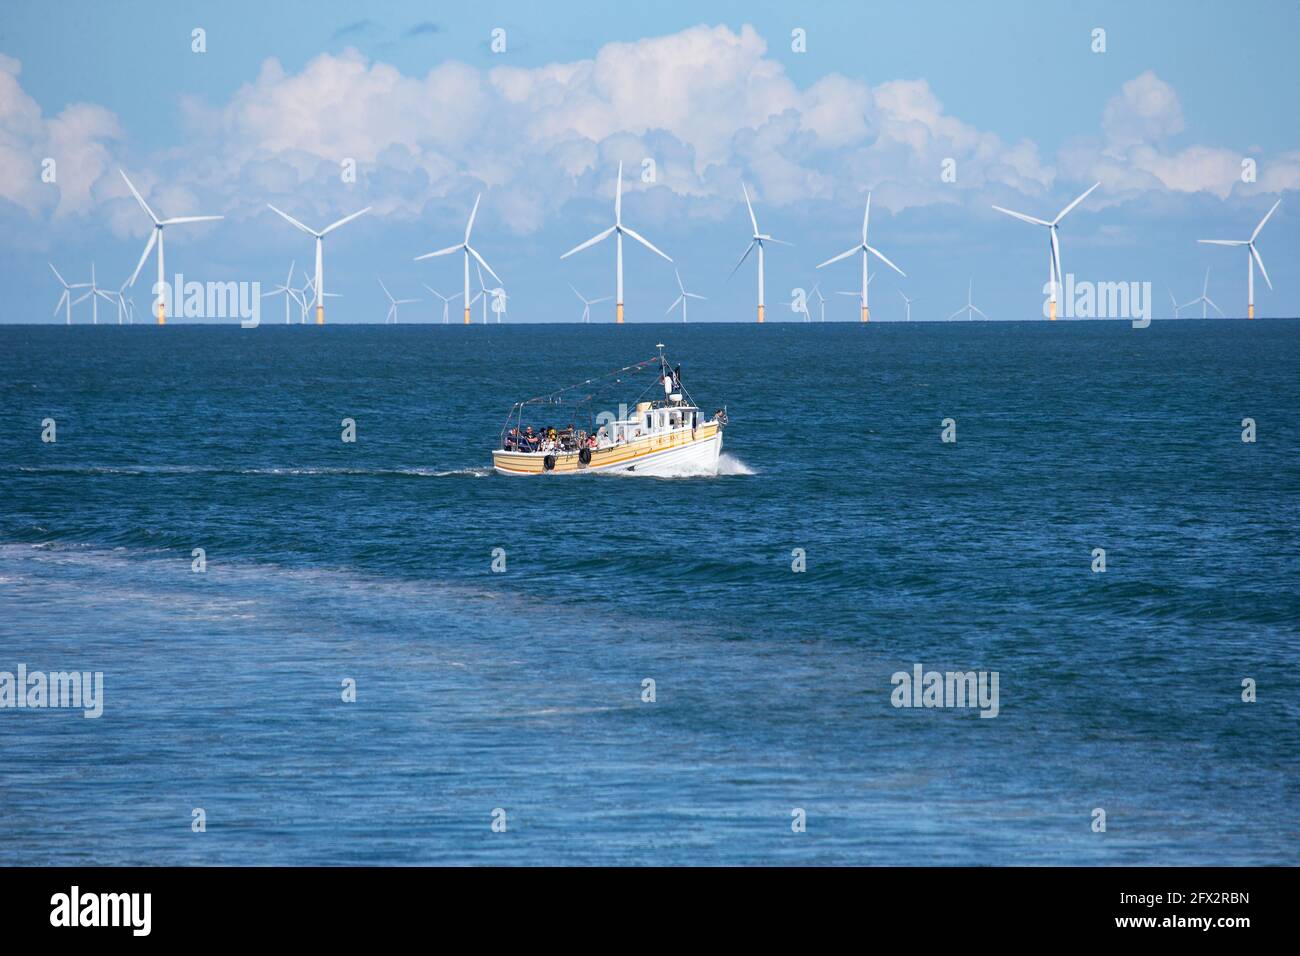 Bateau de plaisance Sea Jay avec des touristes sur une croisière de plaisir dans la baie de Llandudno, au nord du pays de Galles avec des éoliennes en arrière-plan Banque D'Images